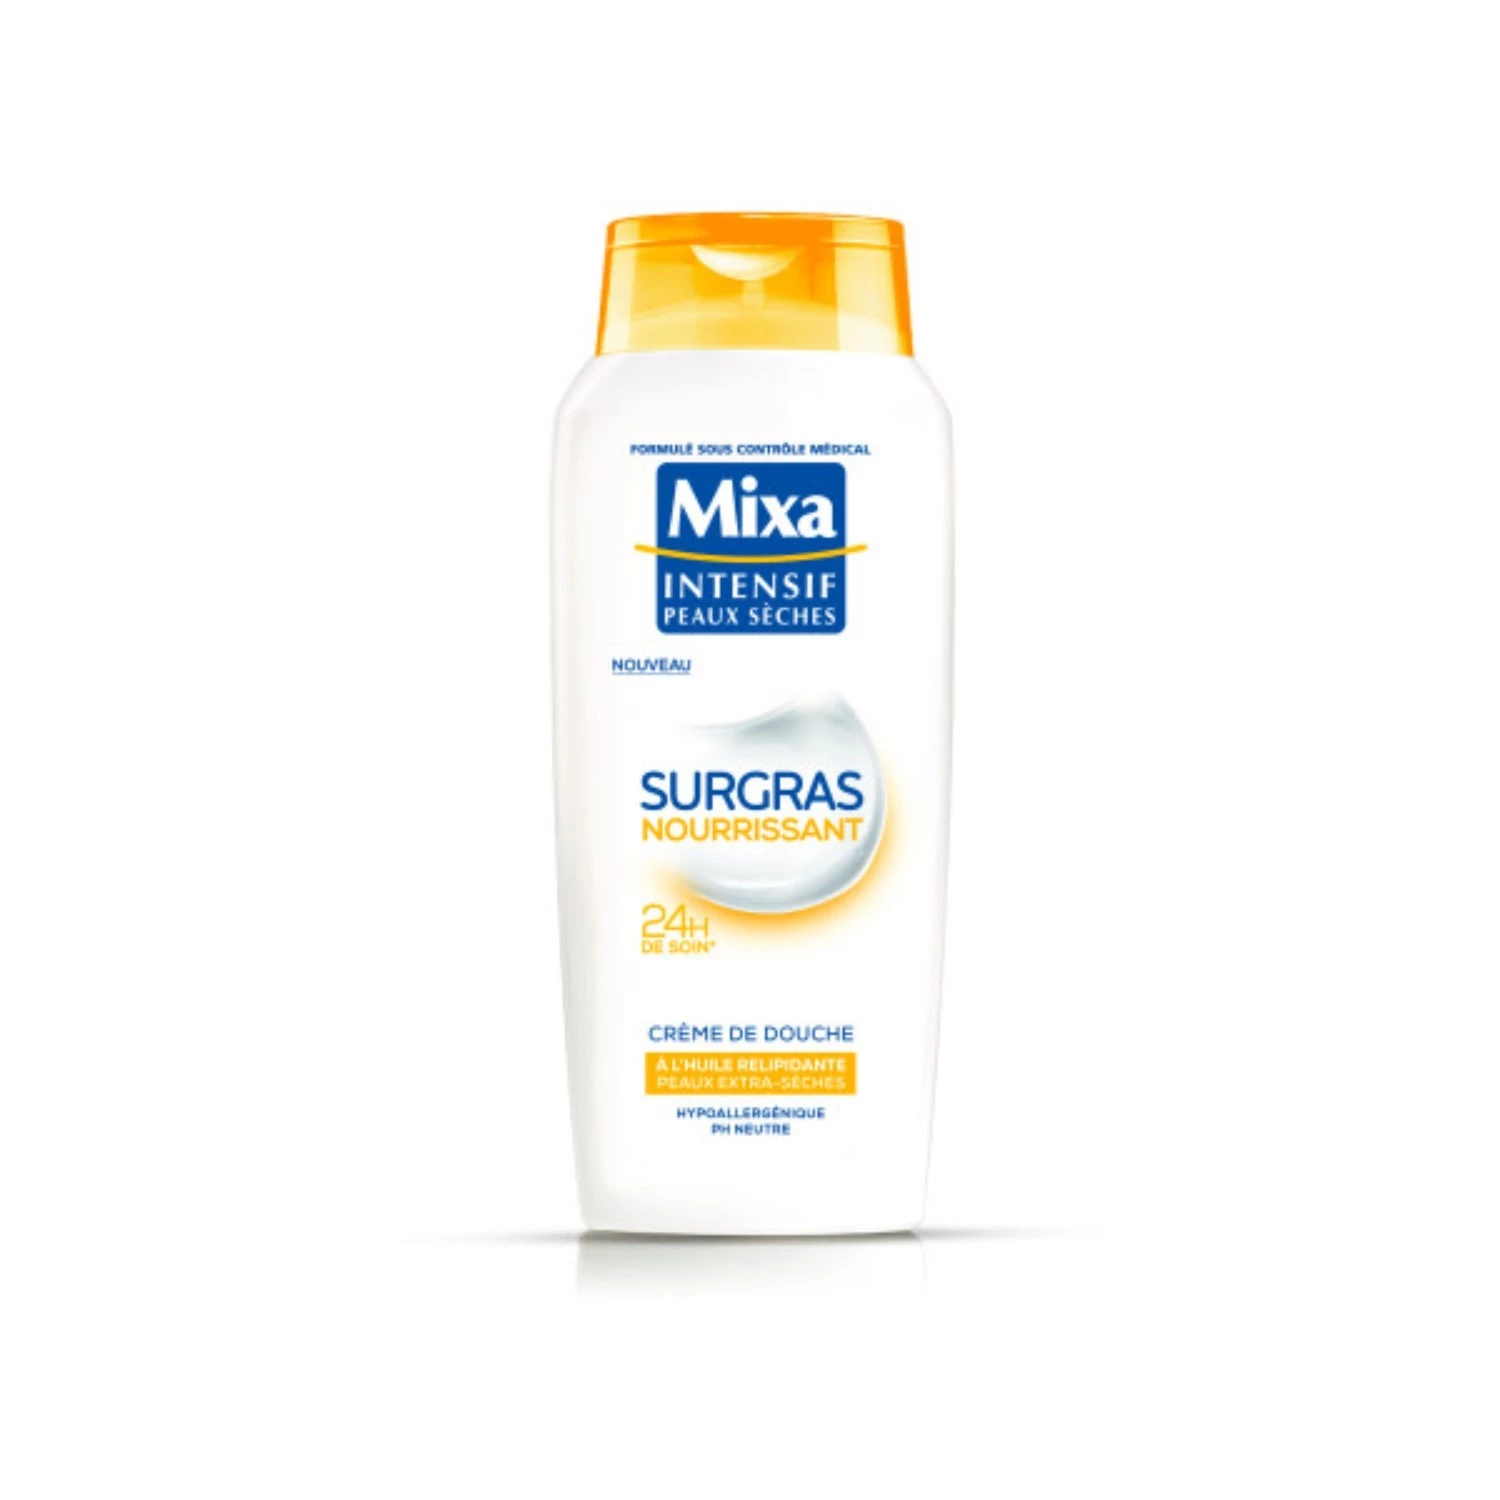 Crème de douche surgras nourrissant intensif peaux sèches 400ml - MIXA